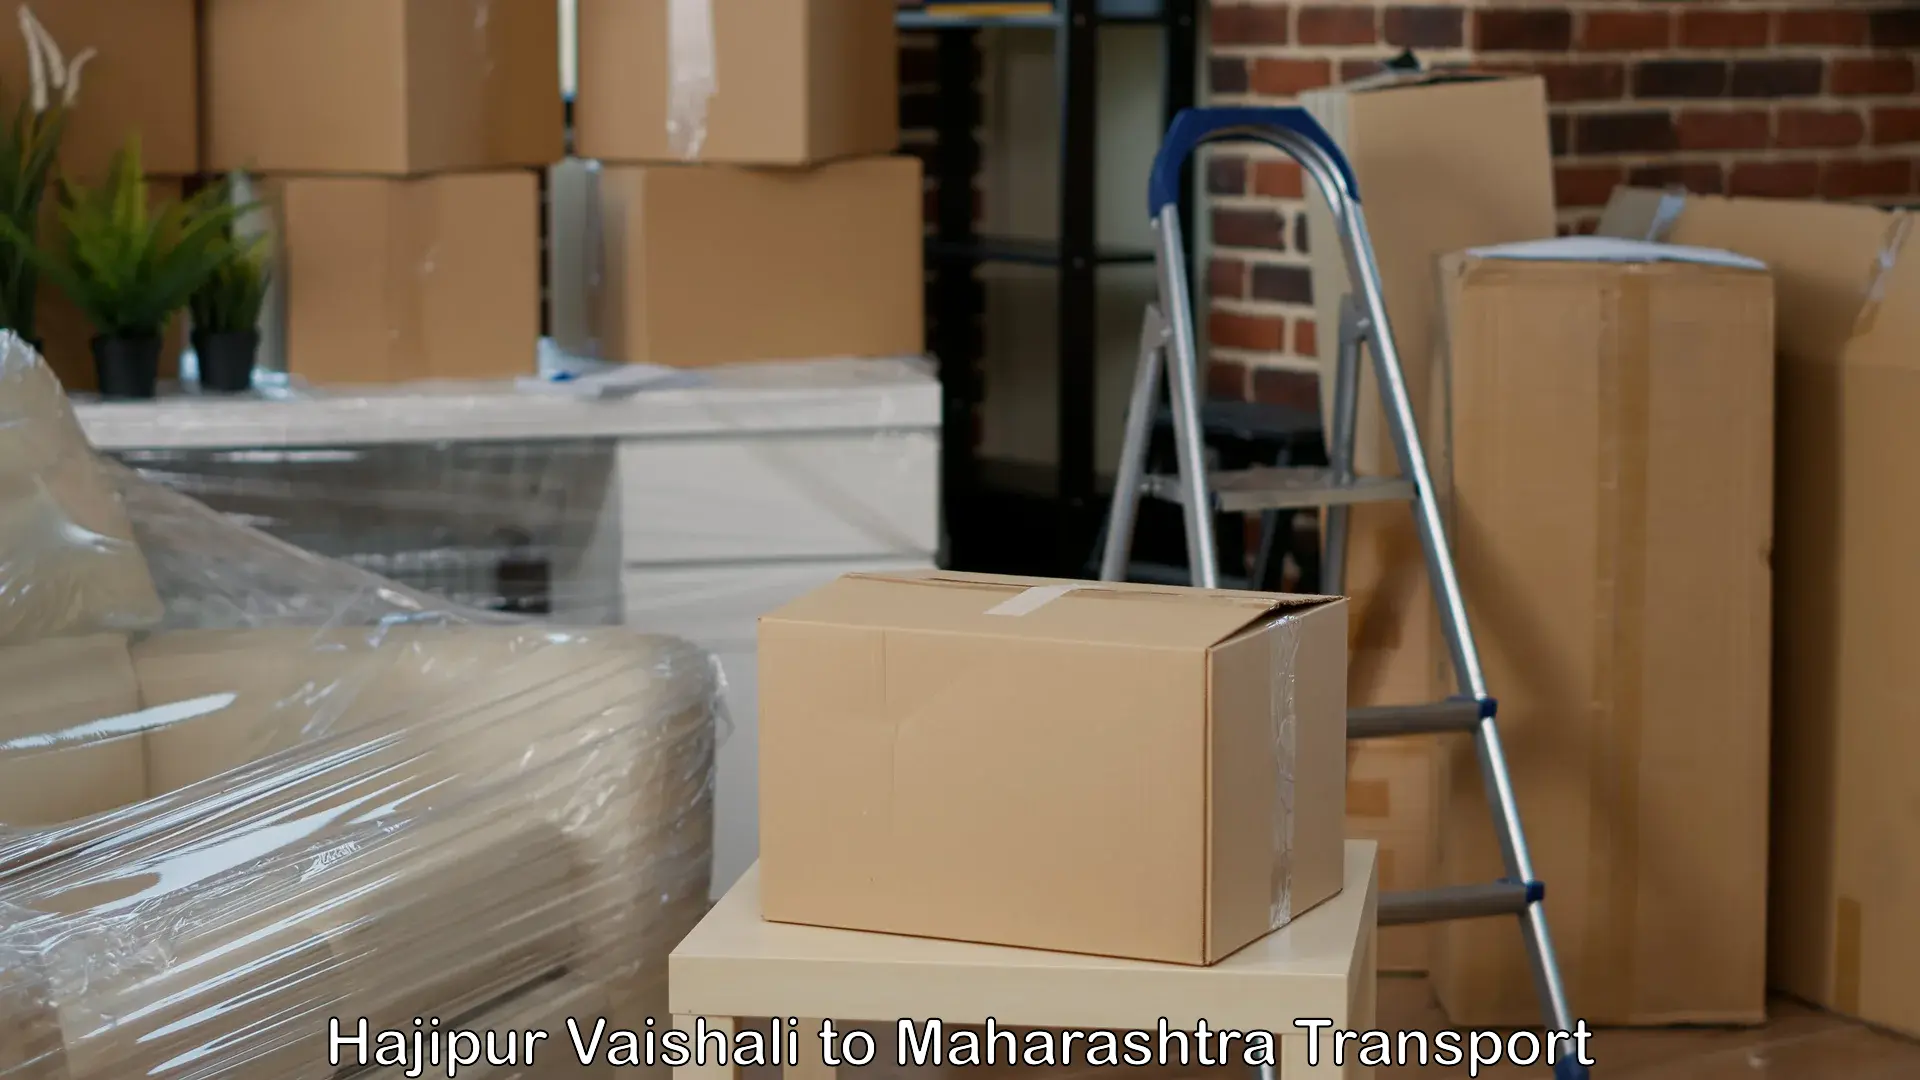 Transport bike from one state to another Hajipur Vaishali to Mumbai Port